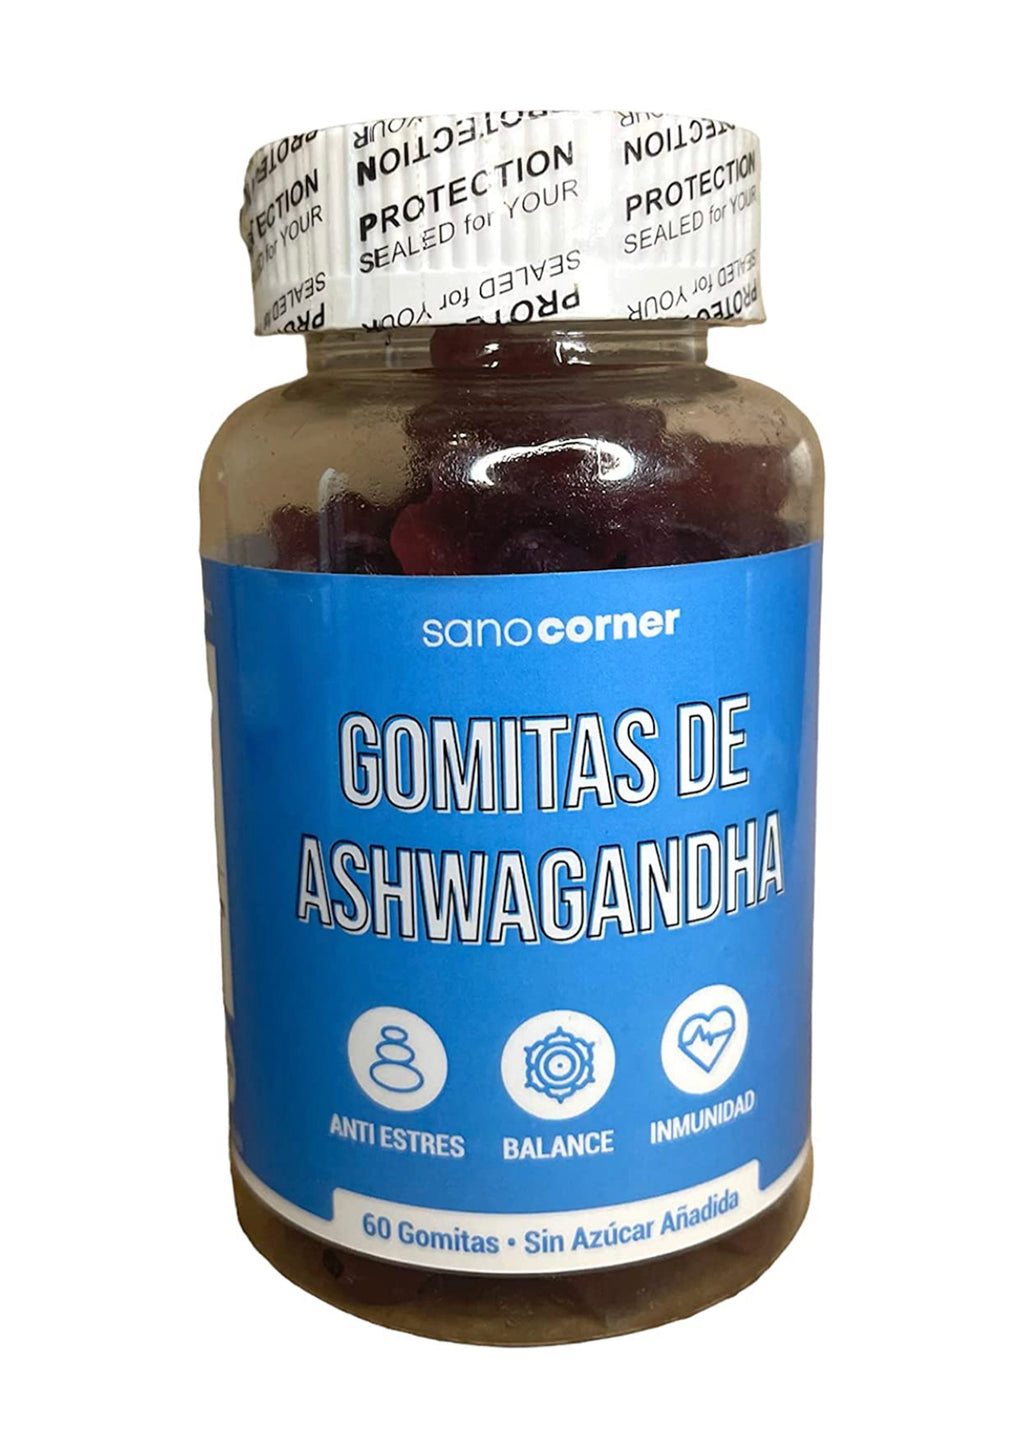 Gomitas de Ashwaghanda - 60 gomitas SIN AZUCAR AÑADIDO - Sabor Uva - 180g.